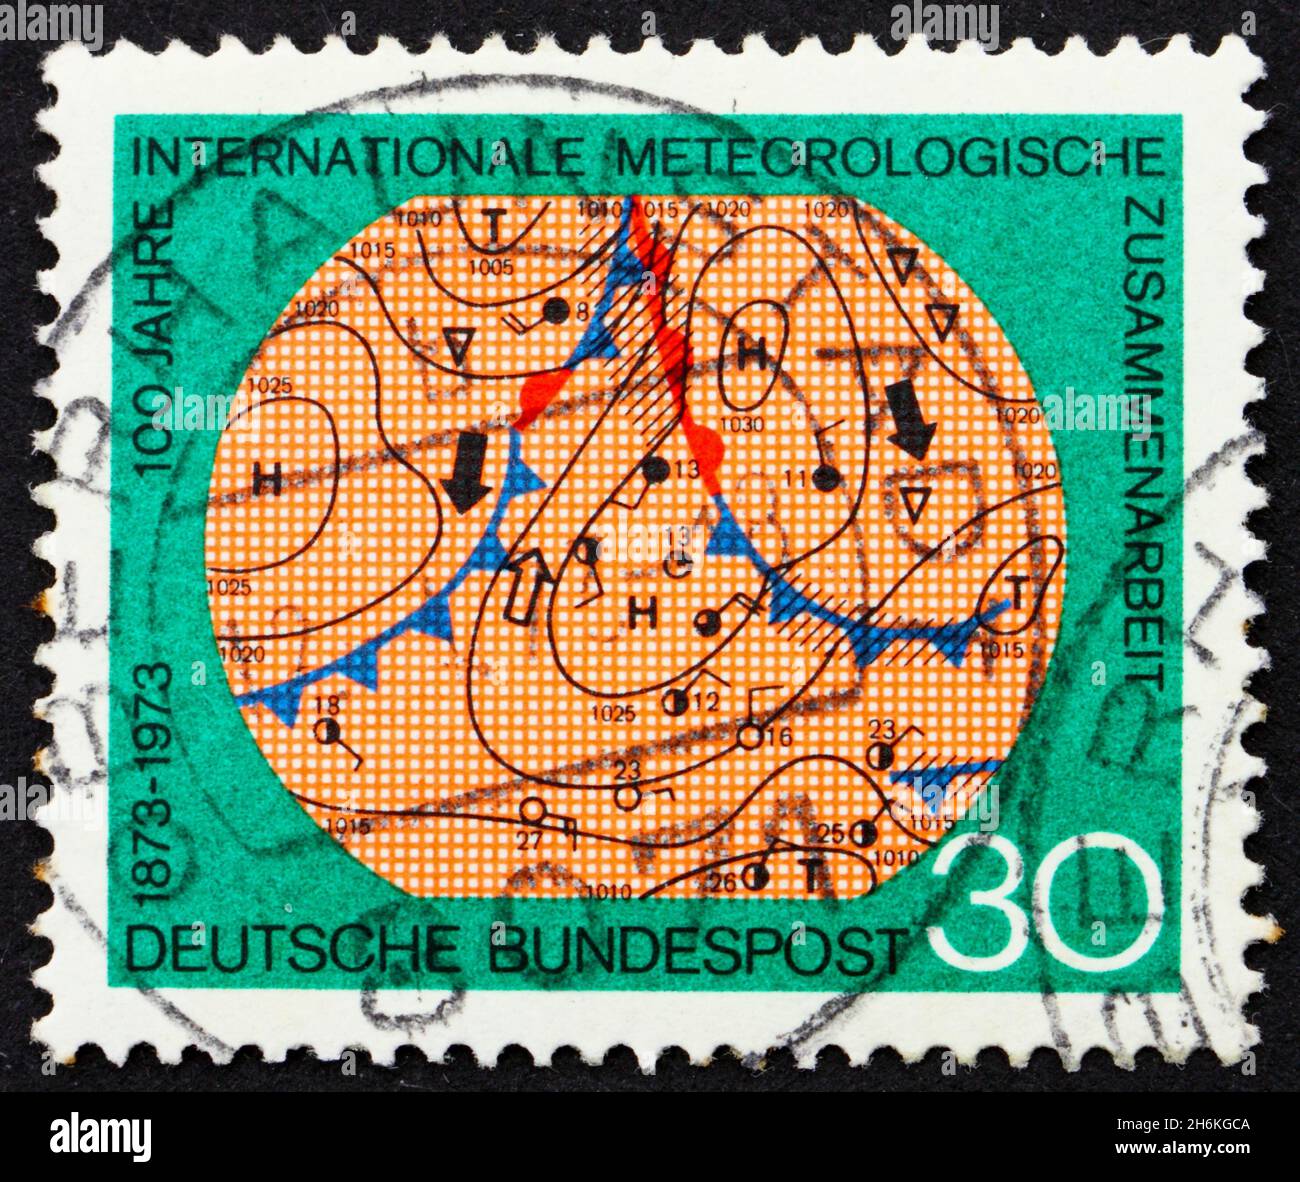 DEUTSCHLAND - UM 1973: Eine in Deutschland gedruckte Marke zeigt eine Meteorologische Karte, hundertjähriges Jubiläum der internationalen meteorologischen Zusammenarbeit, um 1973 Stockfoto